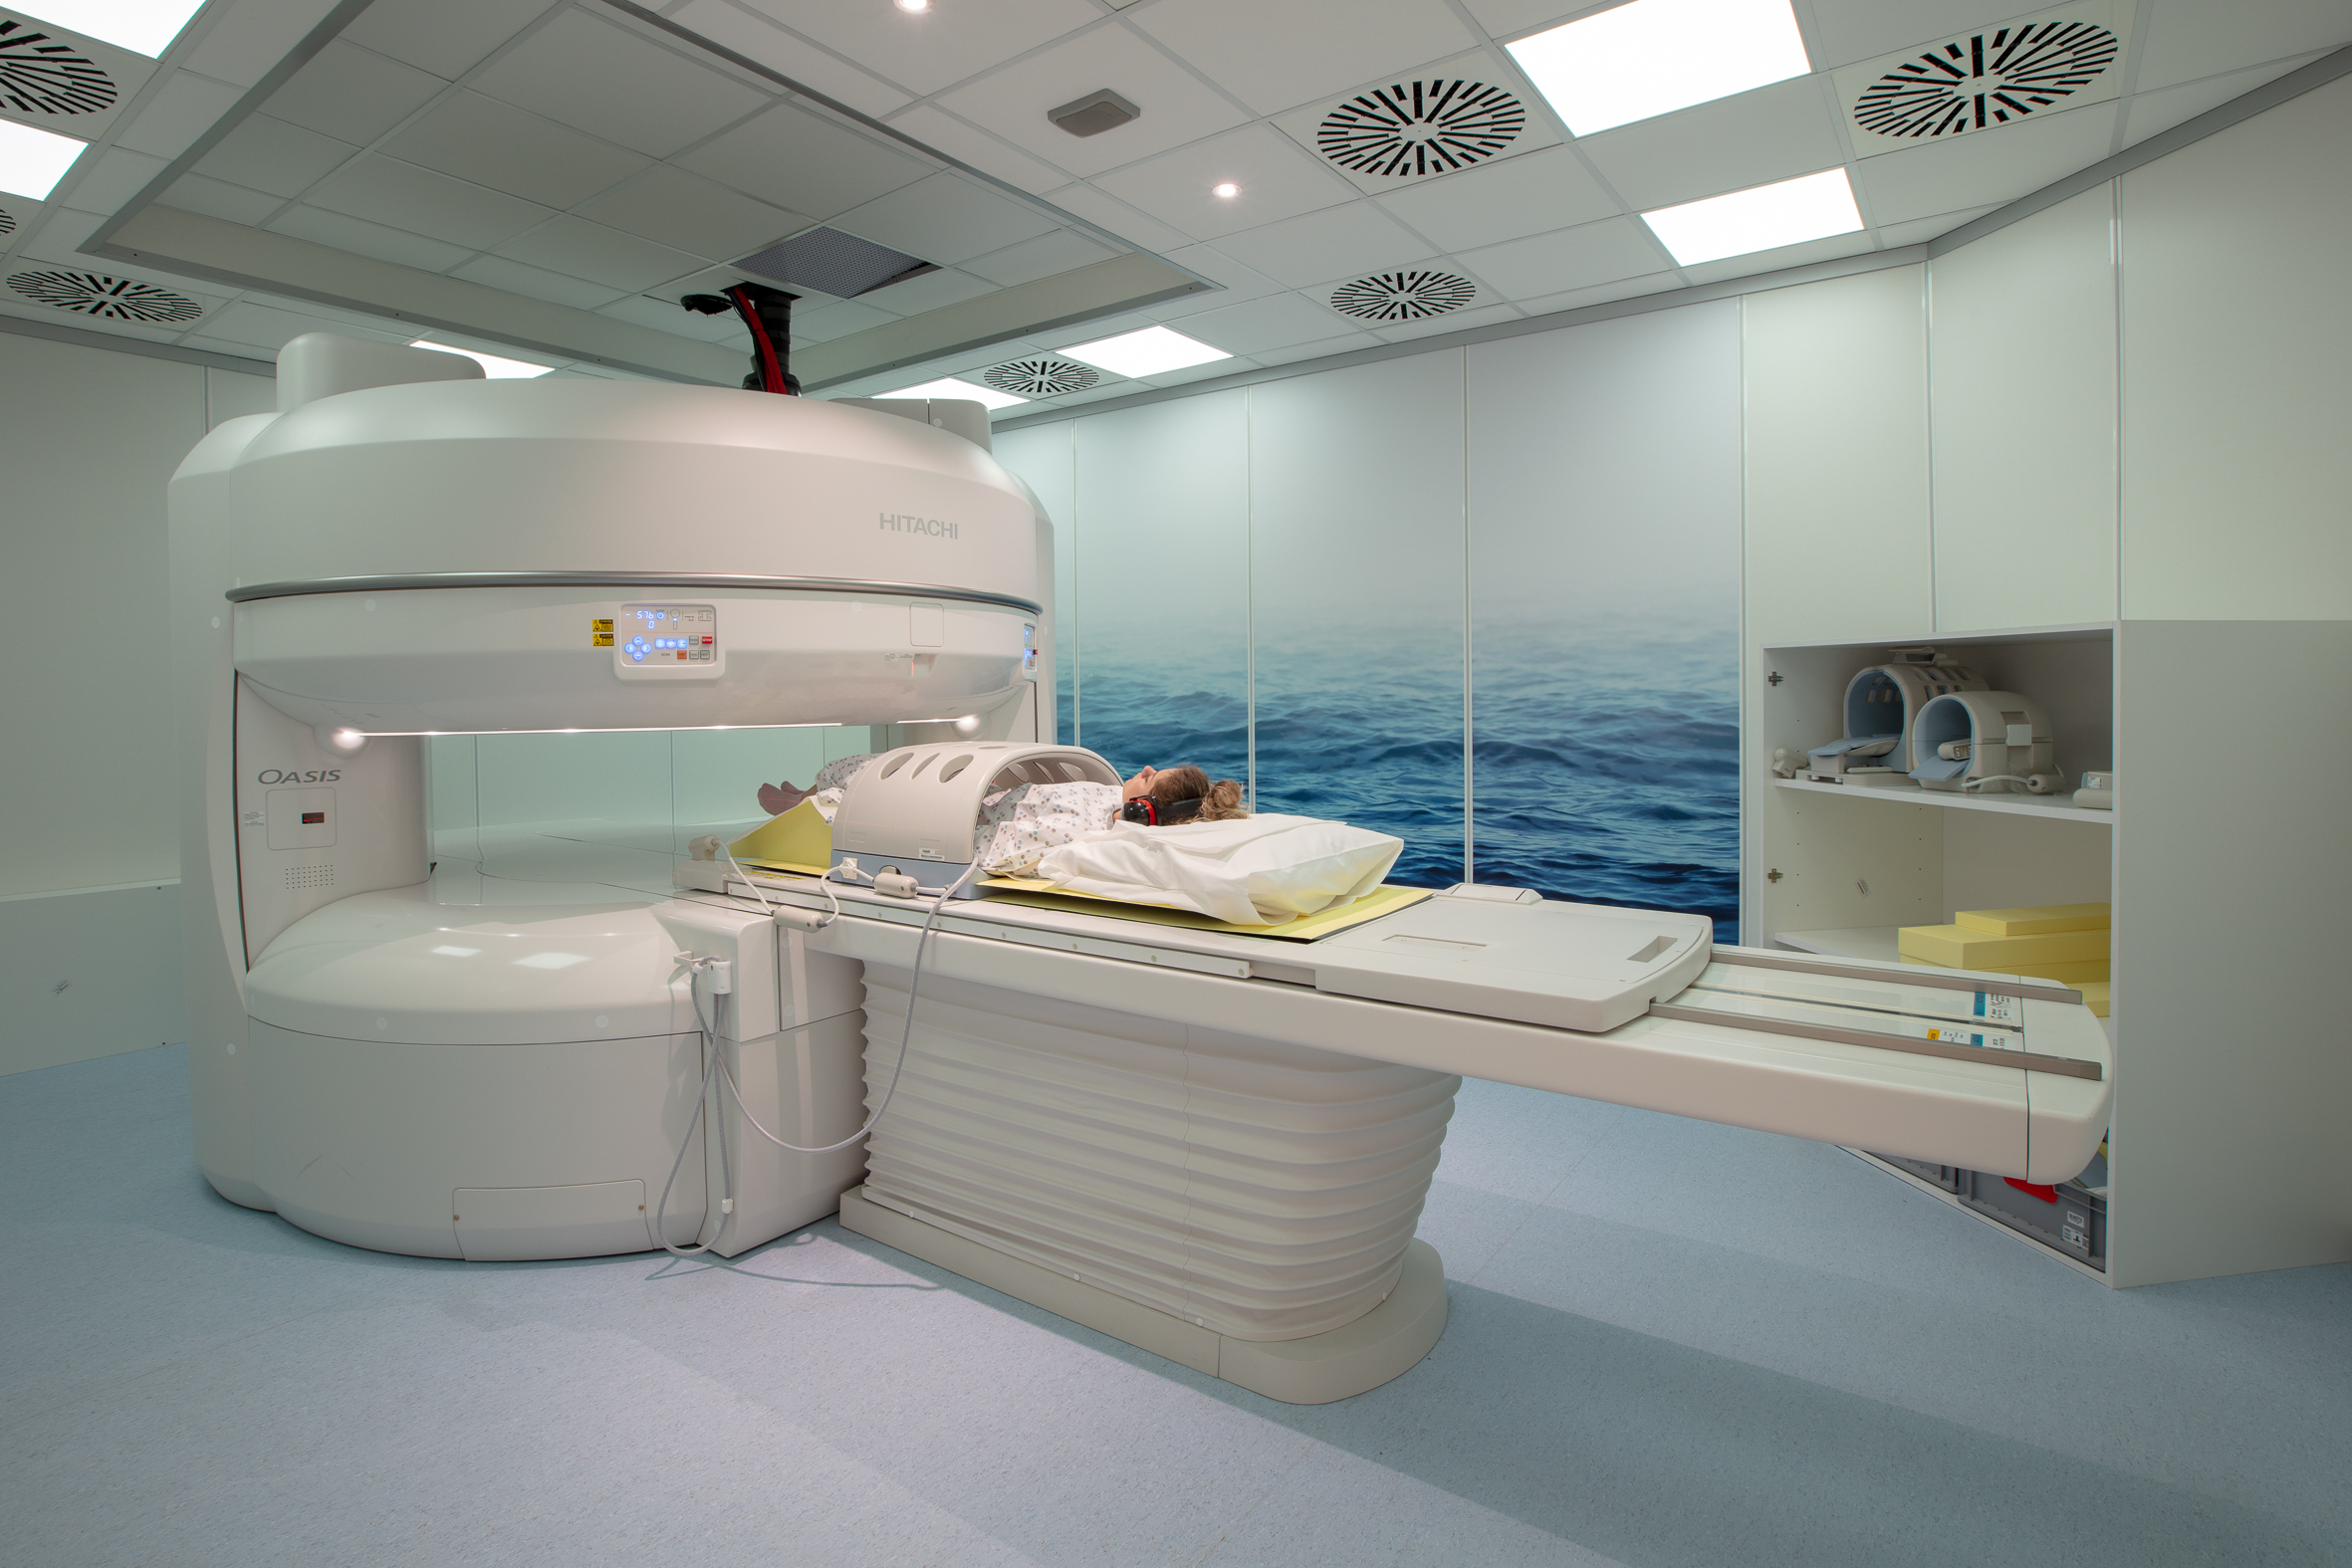 MRI raon fosgailte: Am fuasgladh airson claustrophobic?